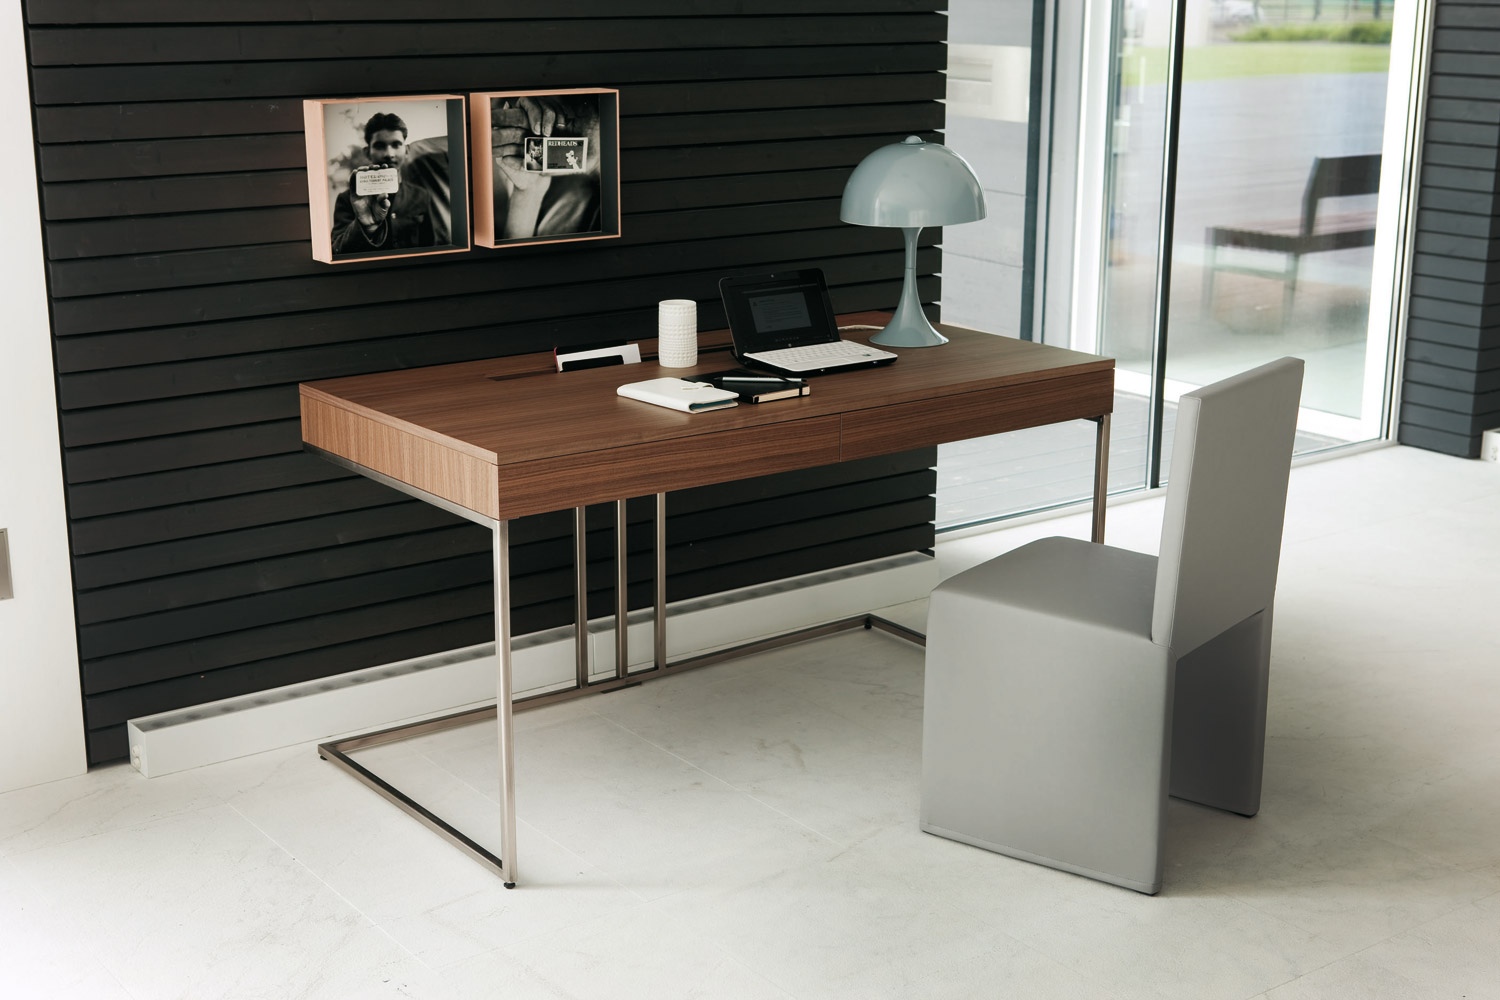 Awesome 30 Inspirational Home Office Desks office desk design